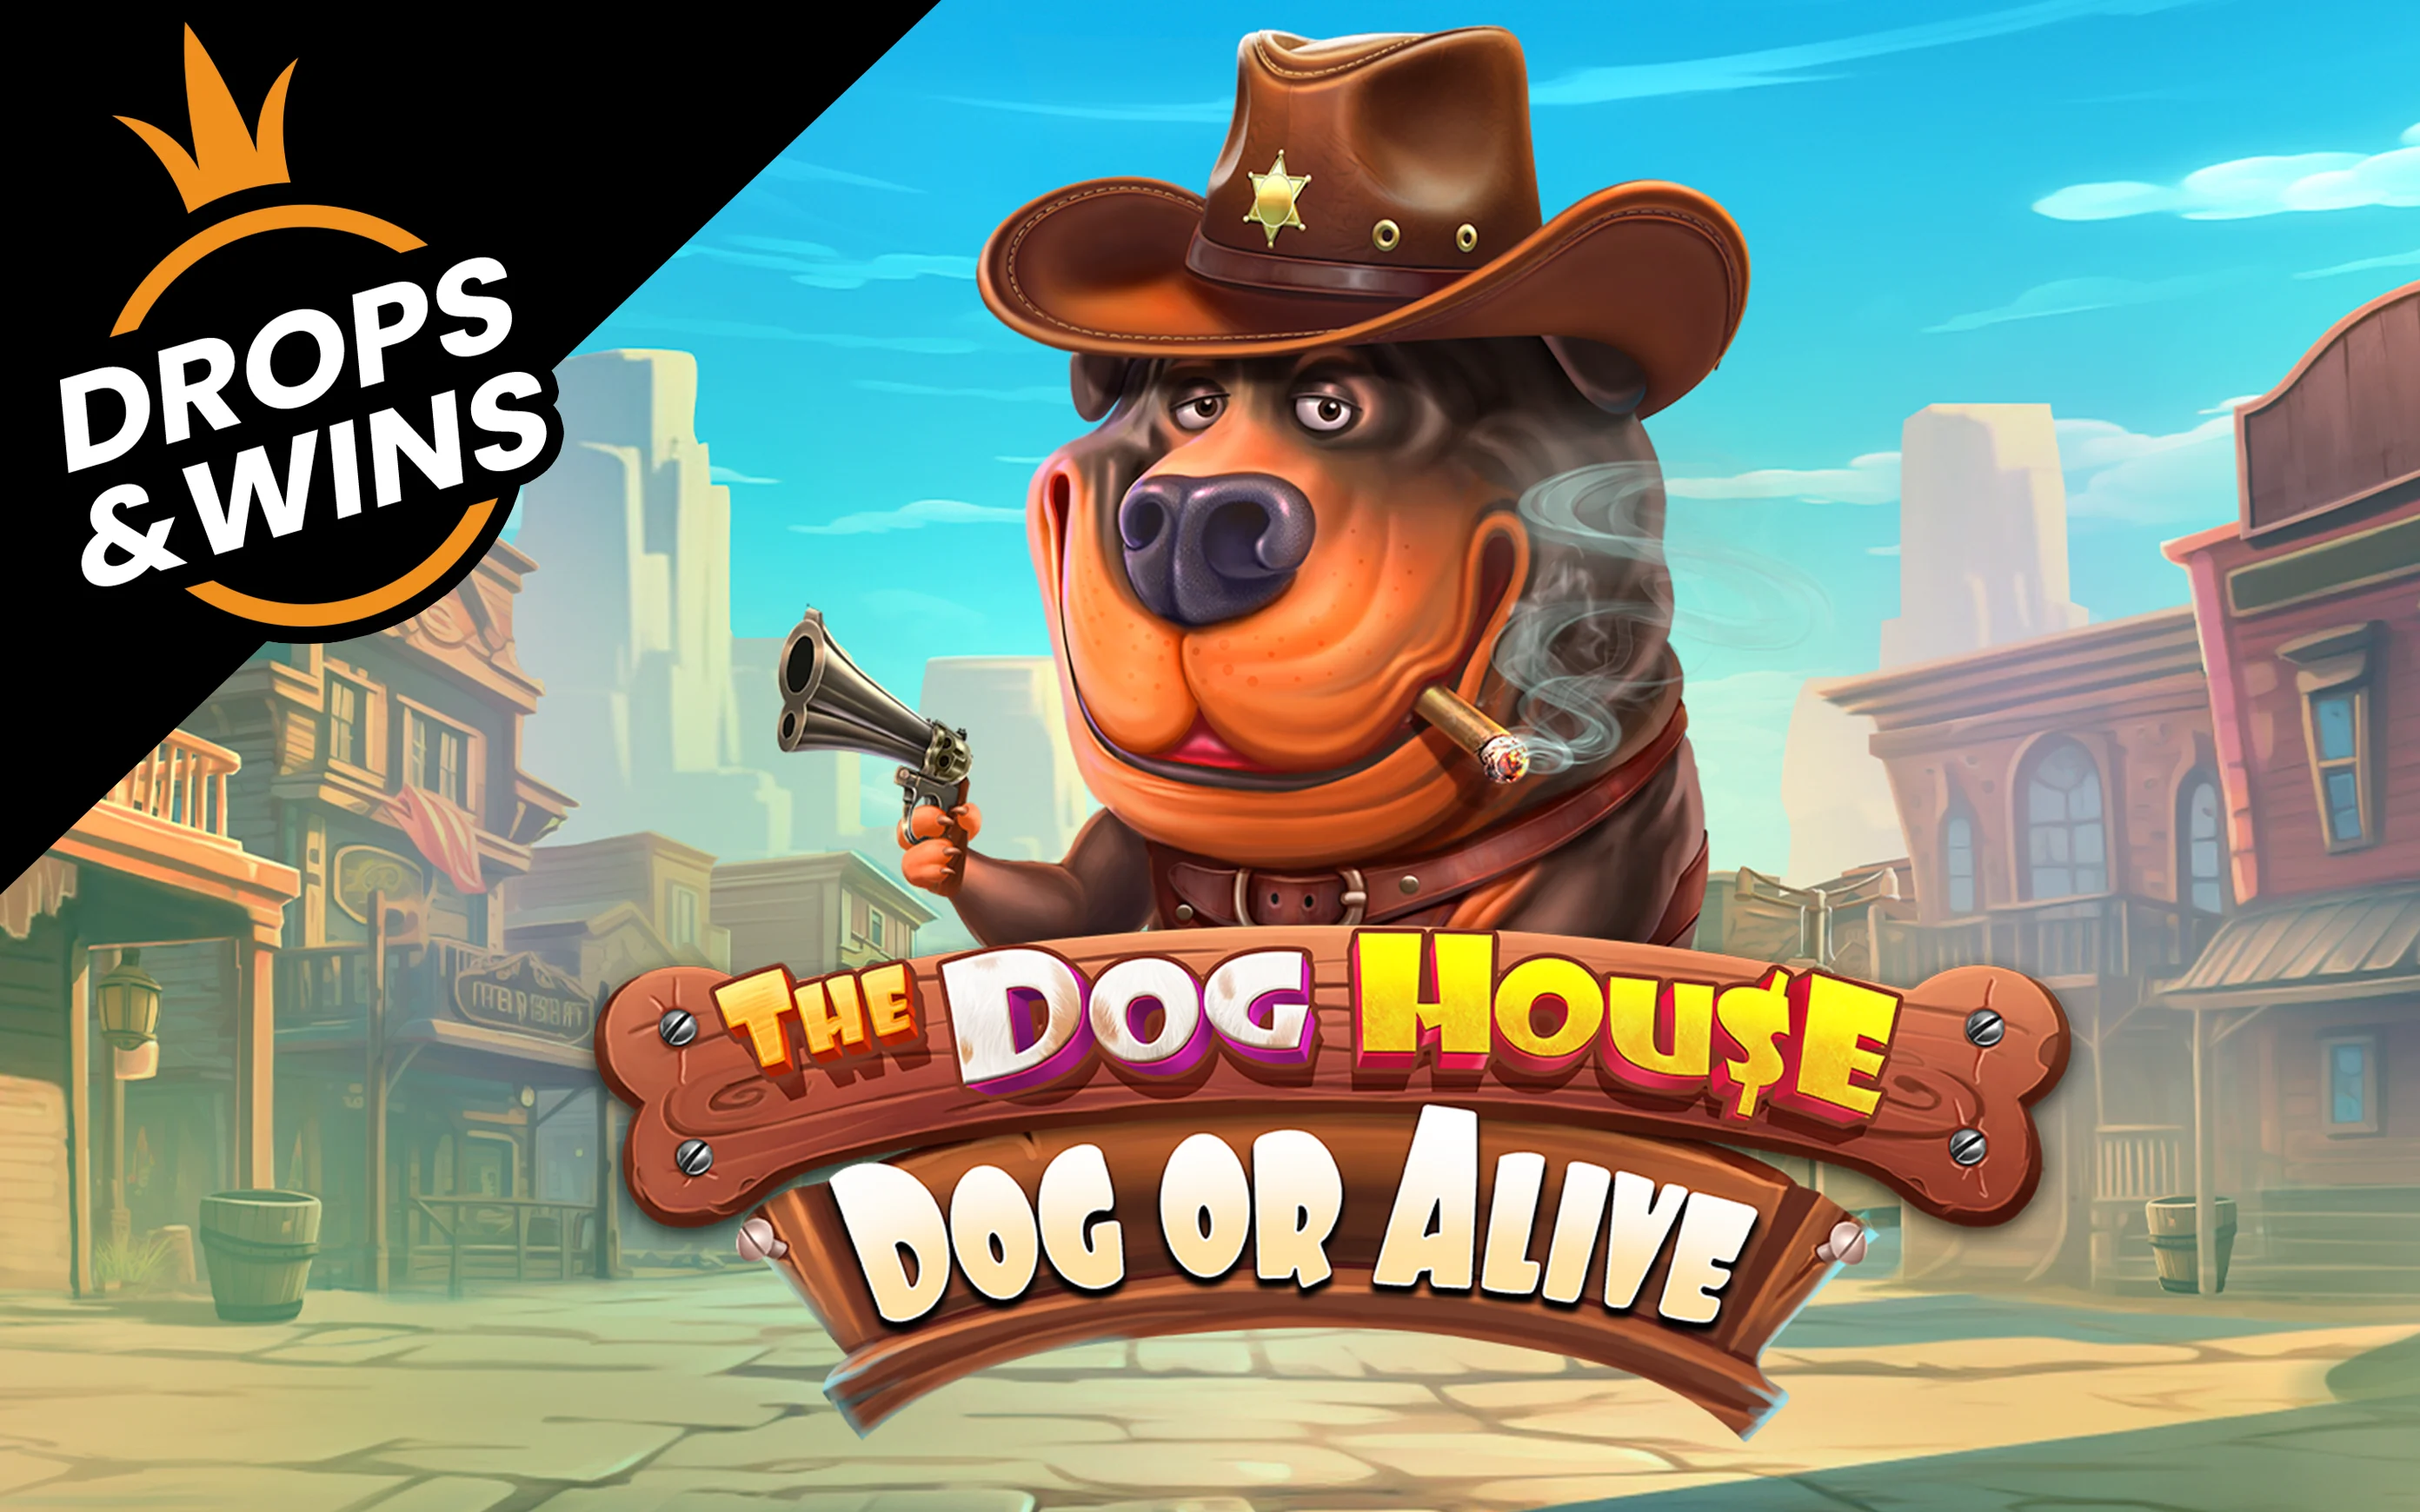 Joacă The Dog House – Dog or Alive în cazinoul online Starcasino.be